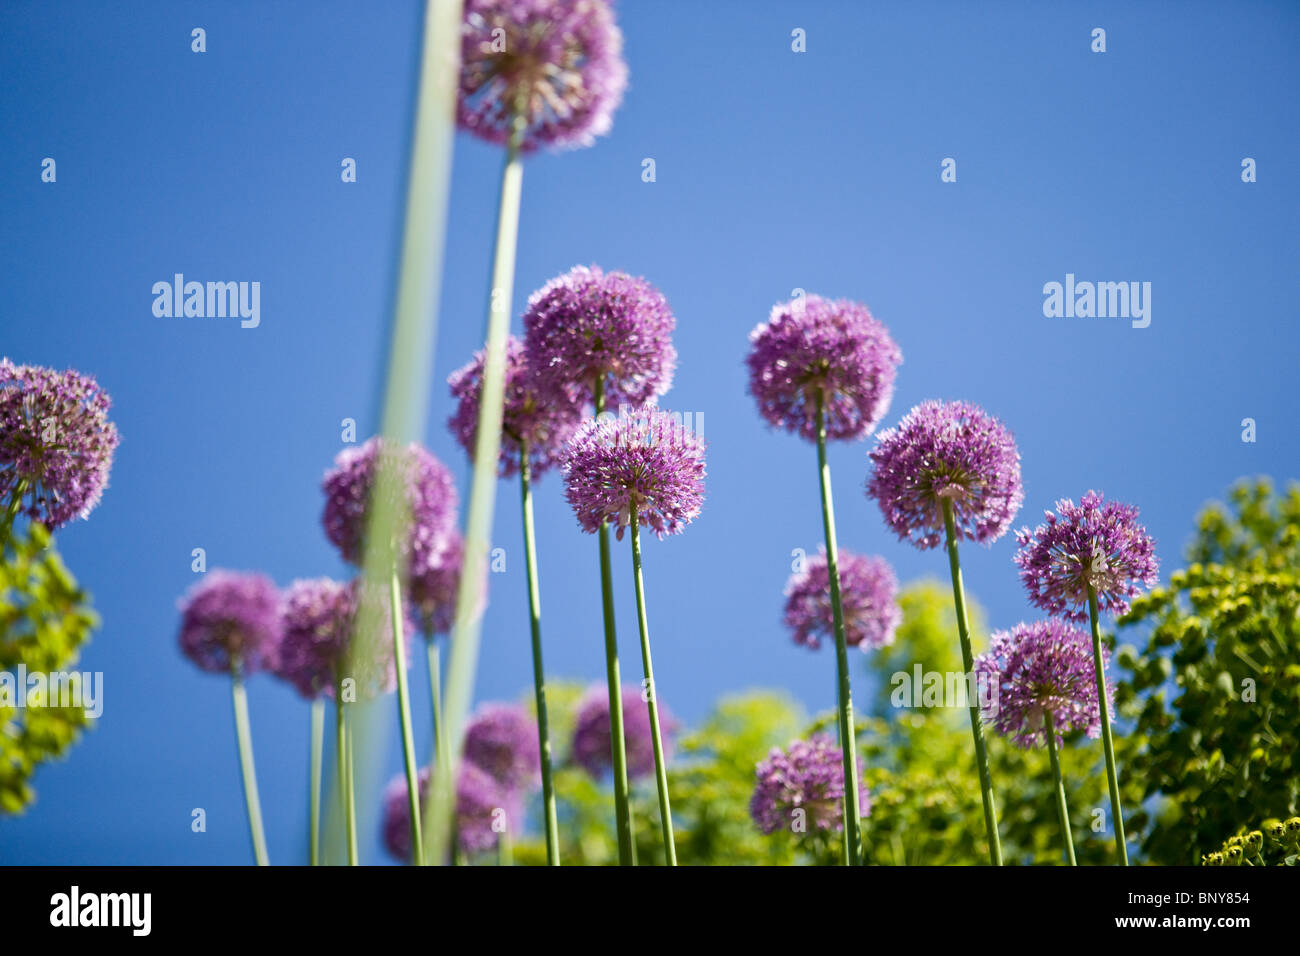 Allium Purple Flowers against blue sky Banque D'Images